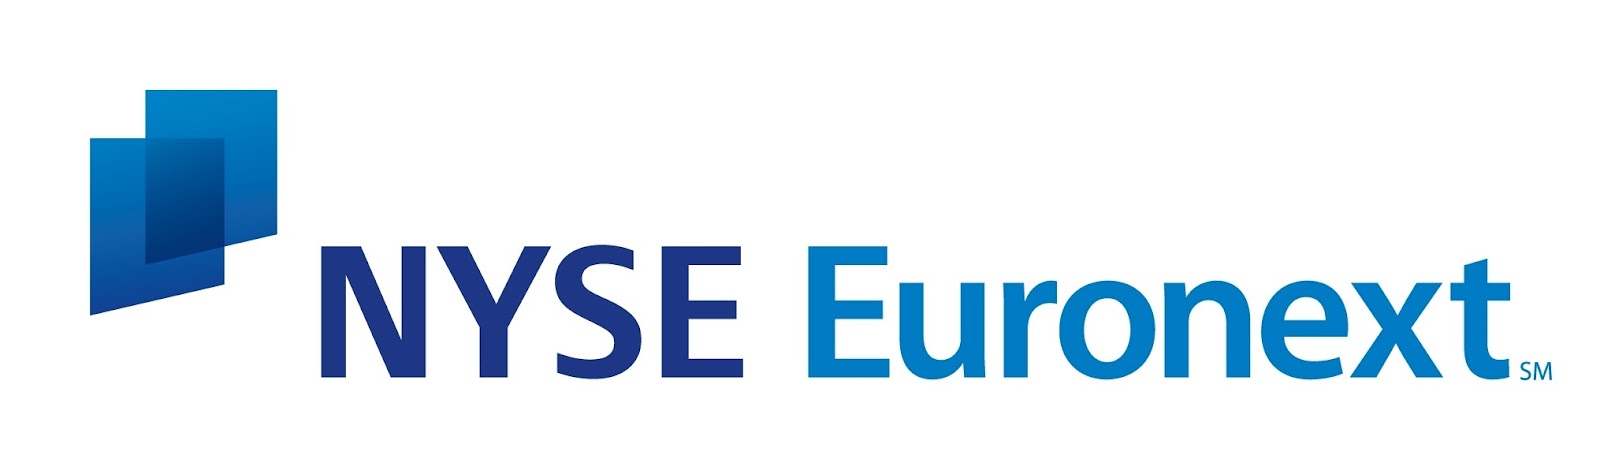 nyse euronext logo